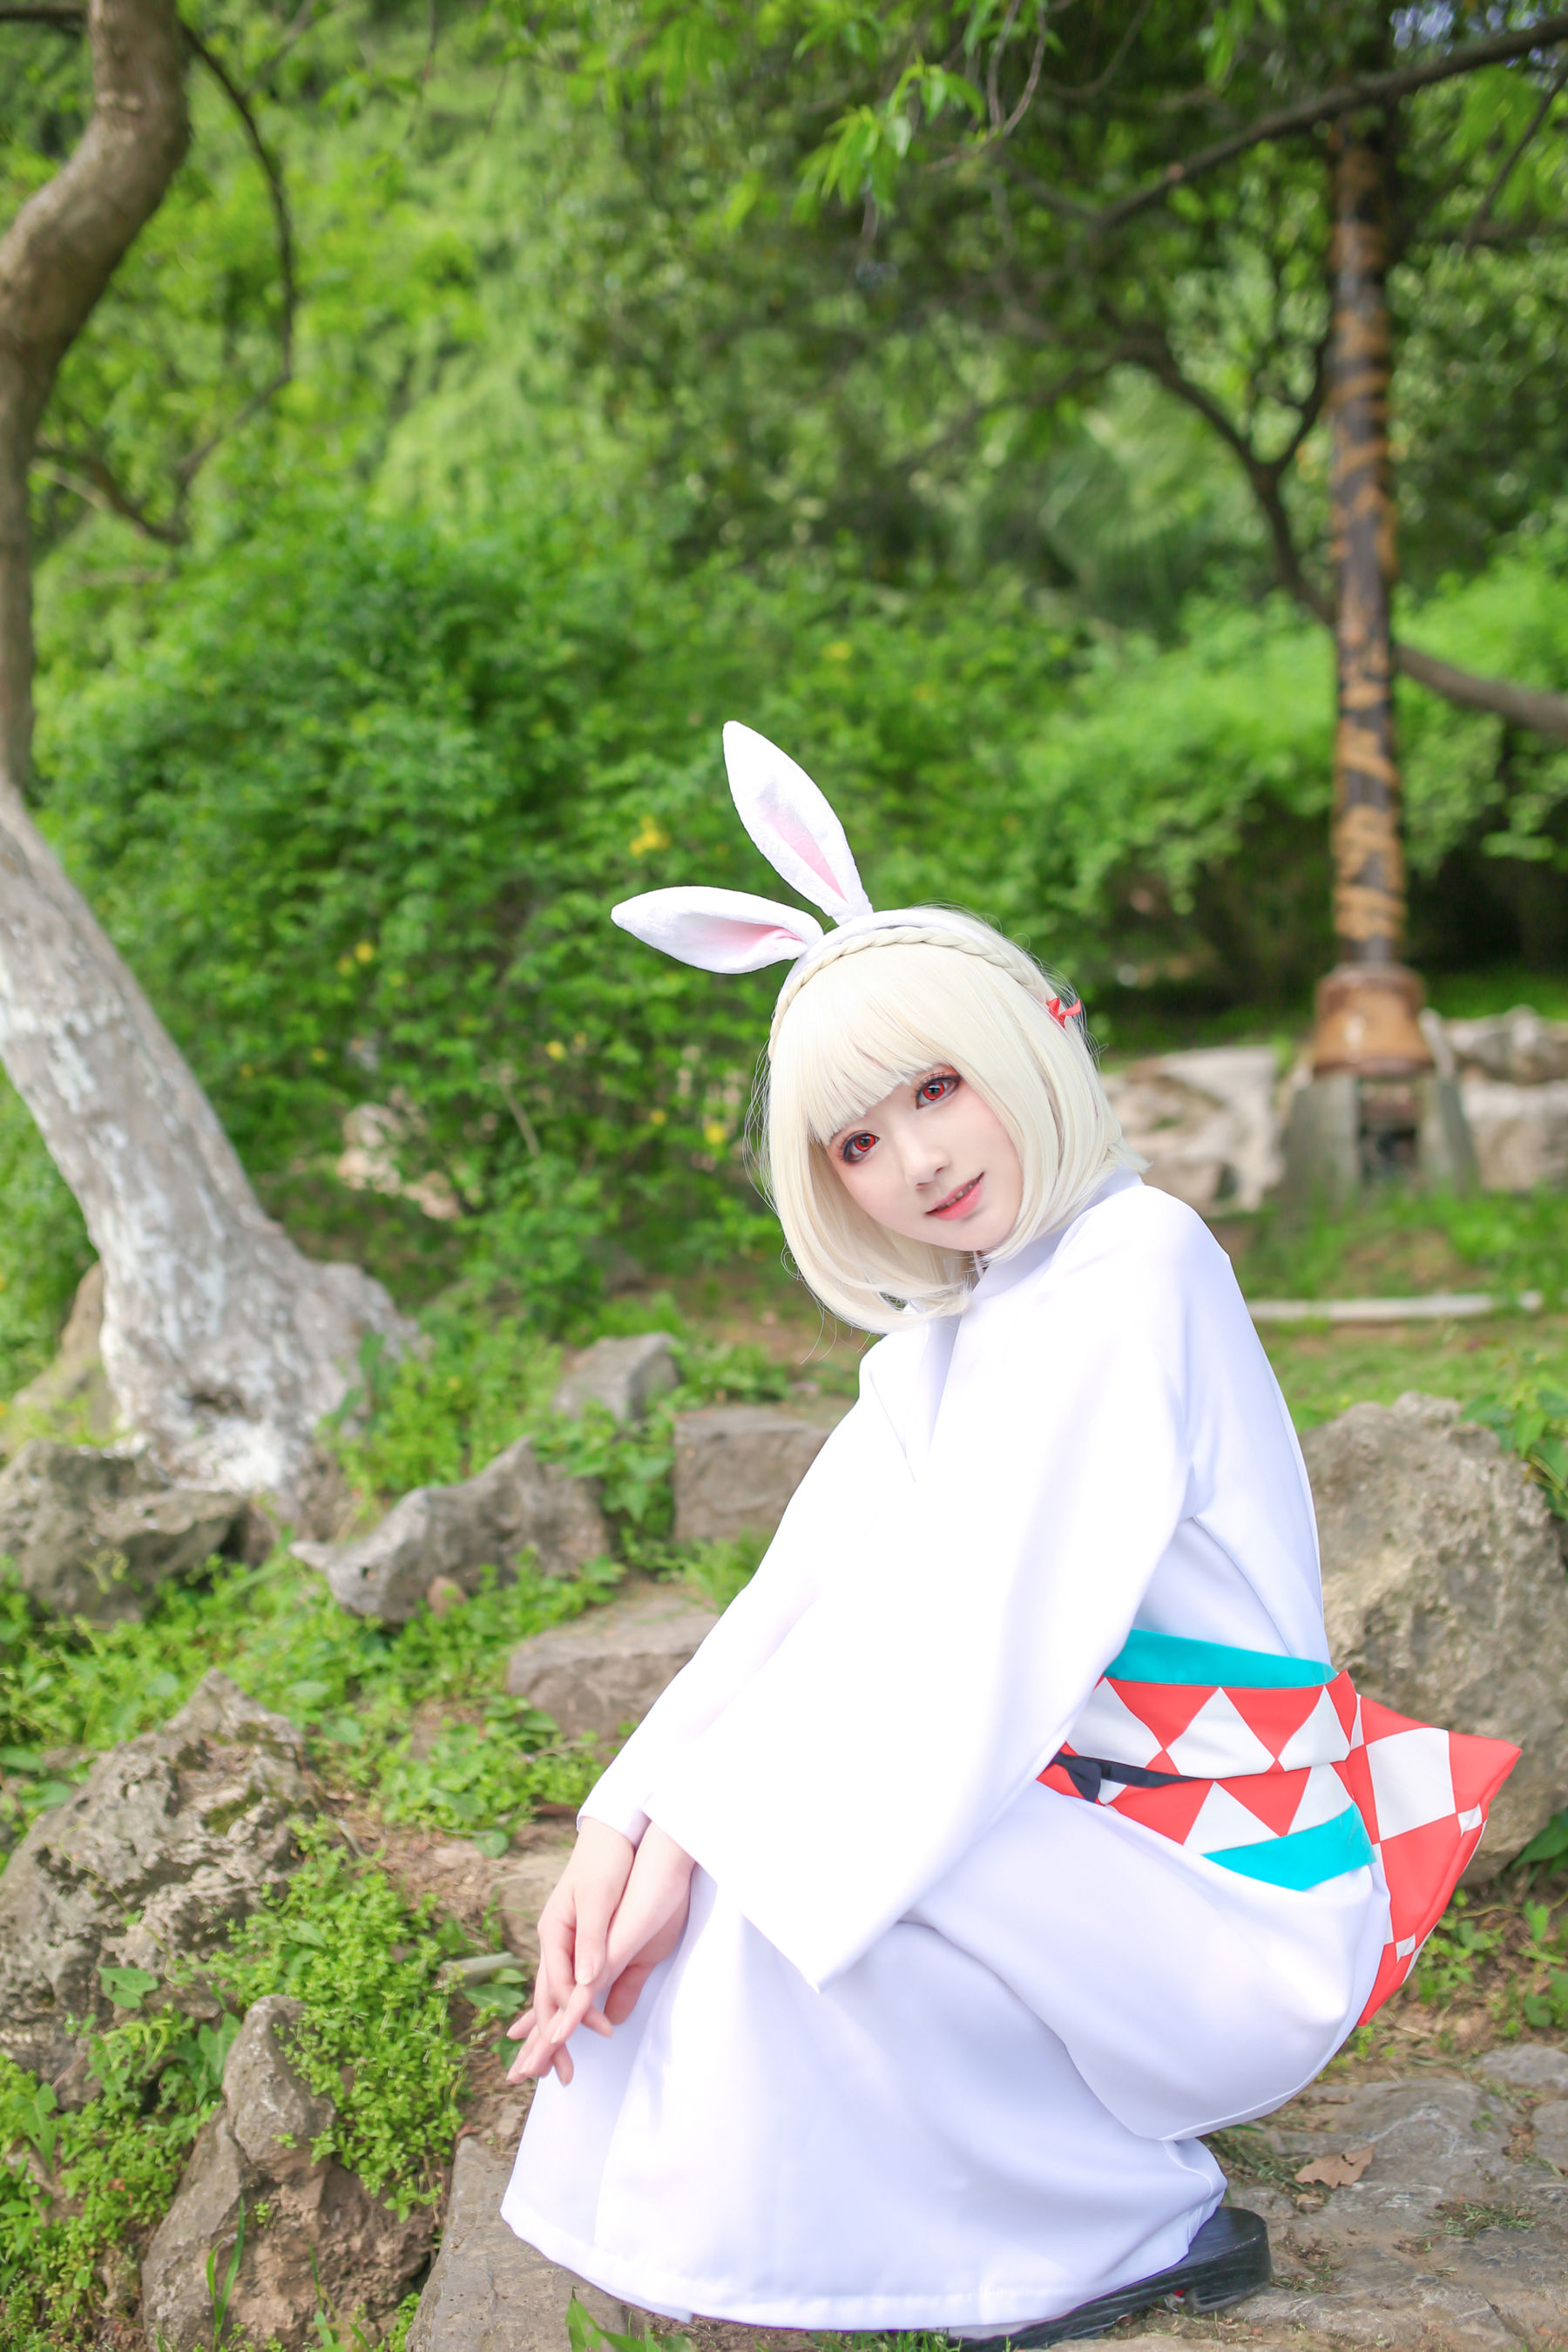 [Foto cosplay] Blogger di anime Xianyin sic - Onmyoji Mountain Rabbit Pagina 4 No.5cd563